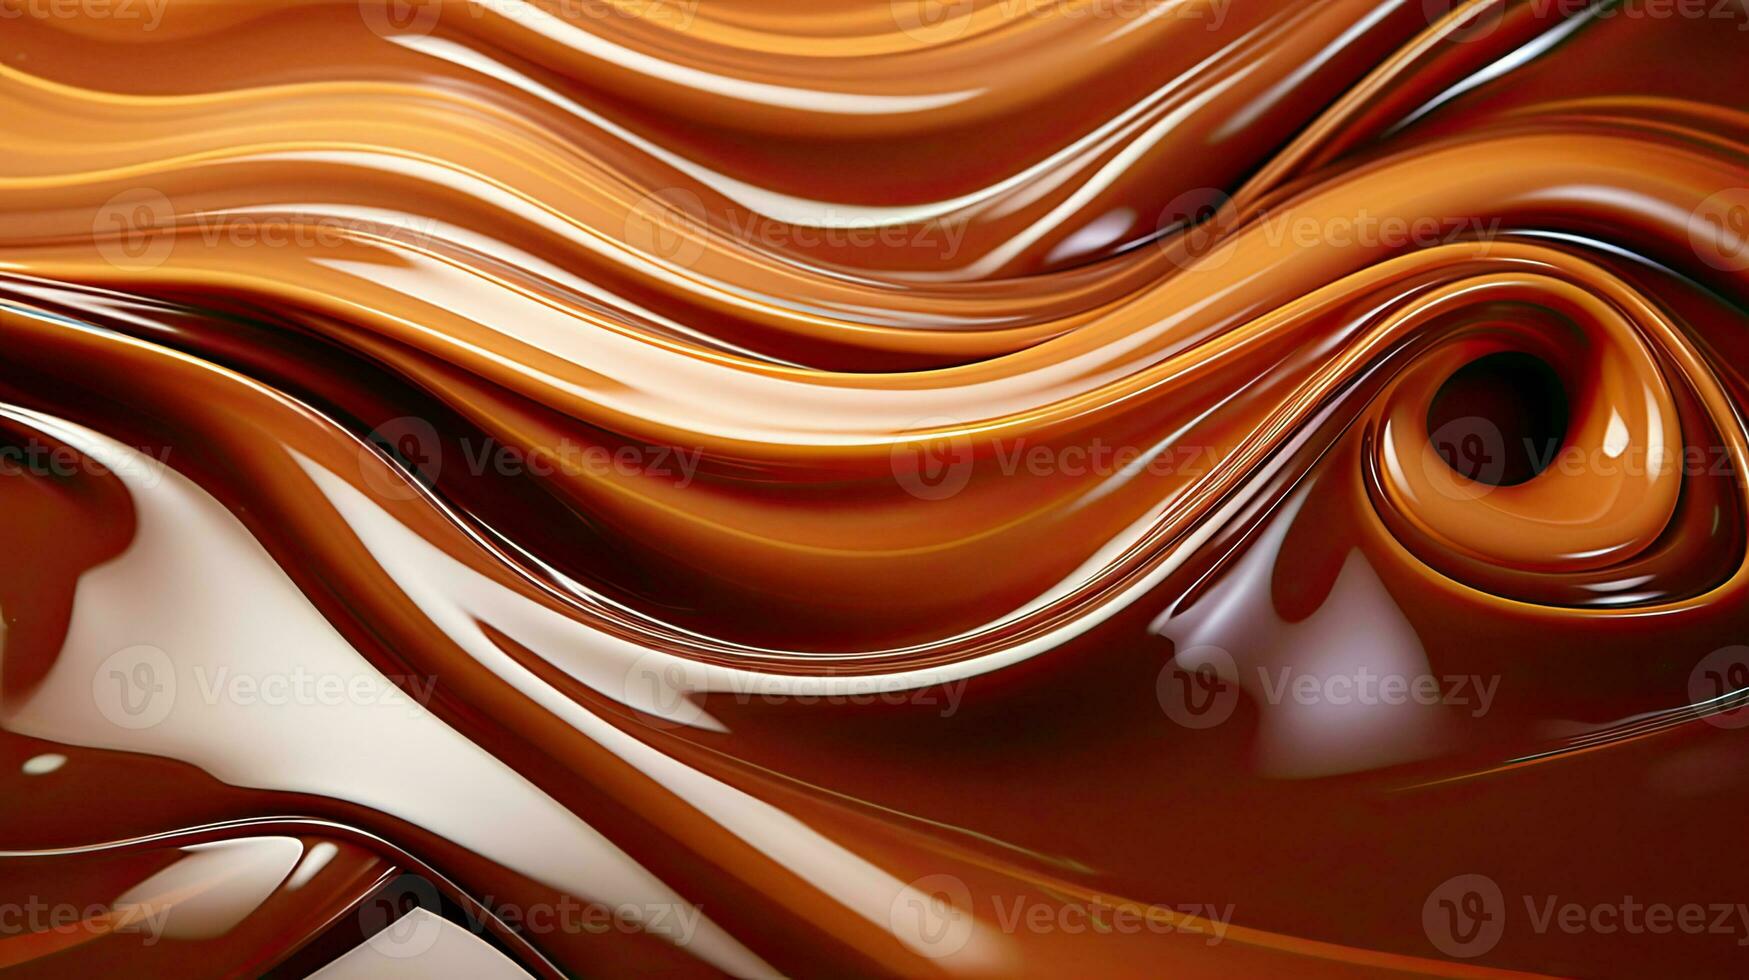 smält brun ljuv kola, bakverk kola och choklad vågor bakgrund foto